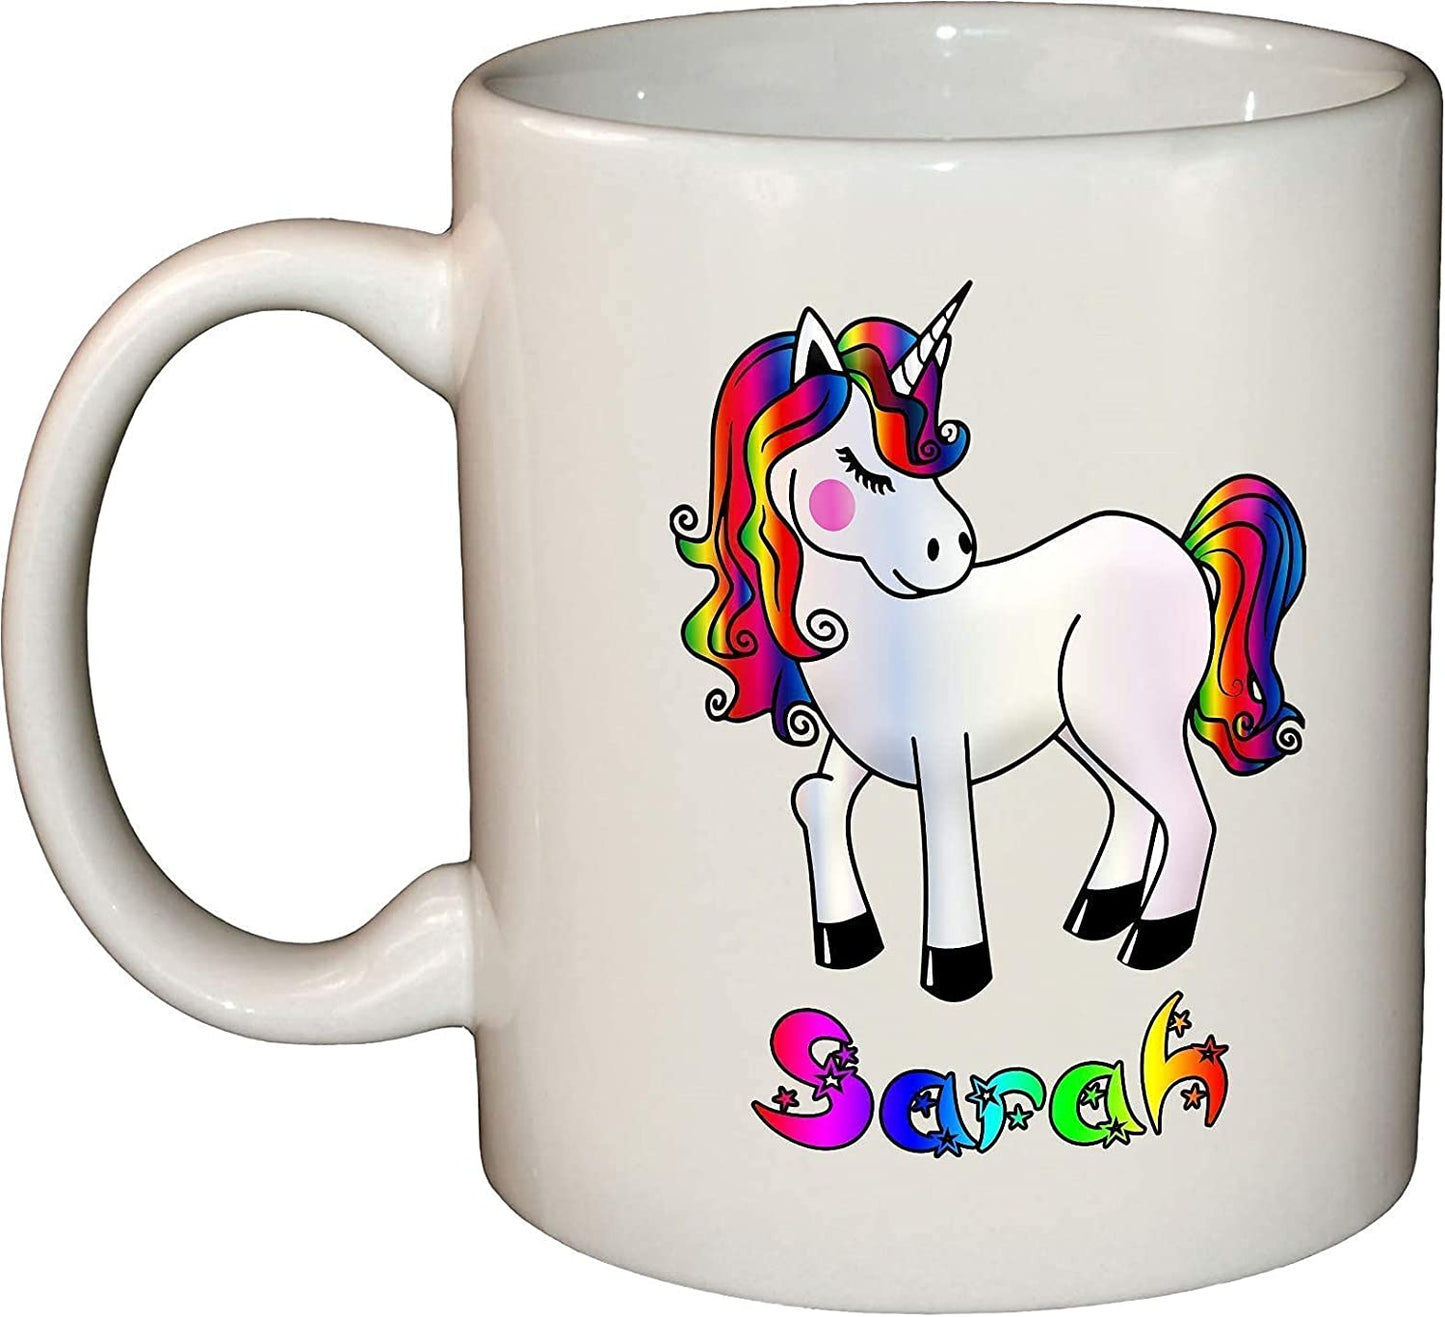 Unicorn Personalised Name Ceramic Mug/Cup 11oz Dishwasher & Microwave safe